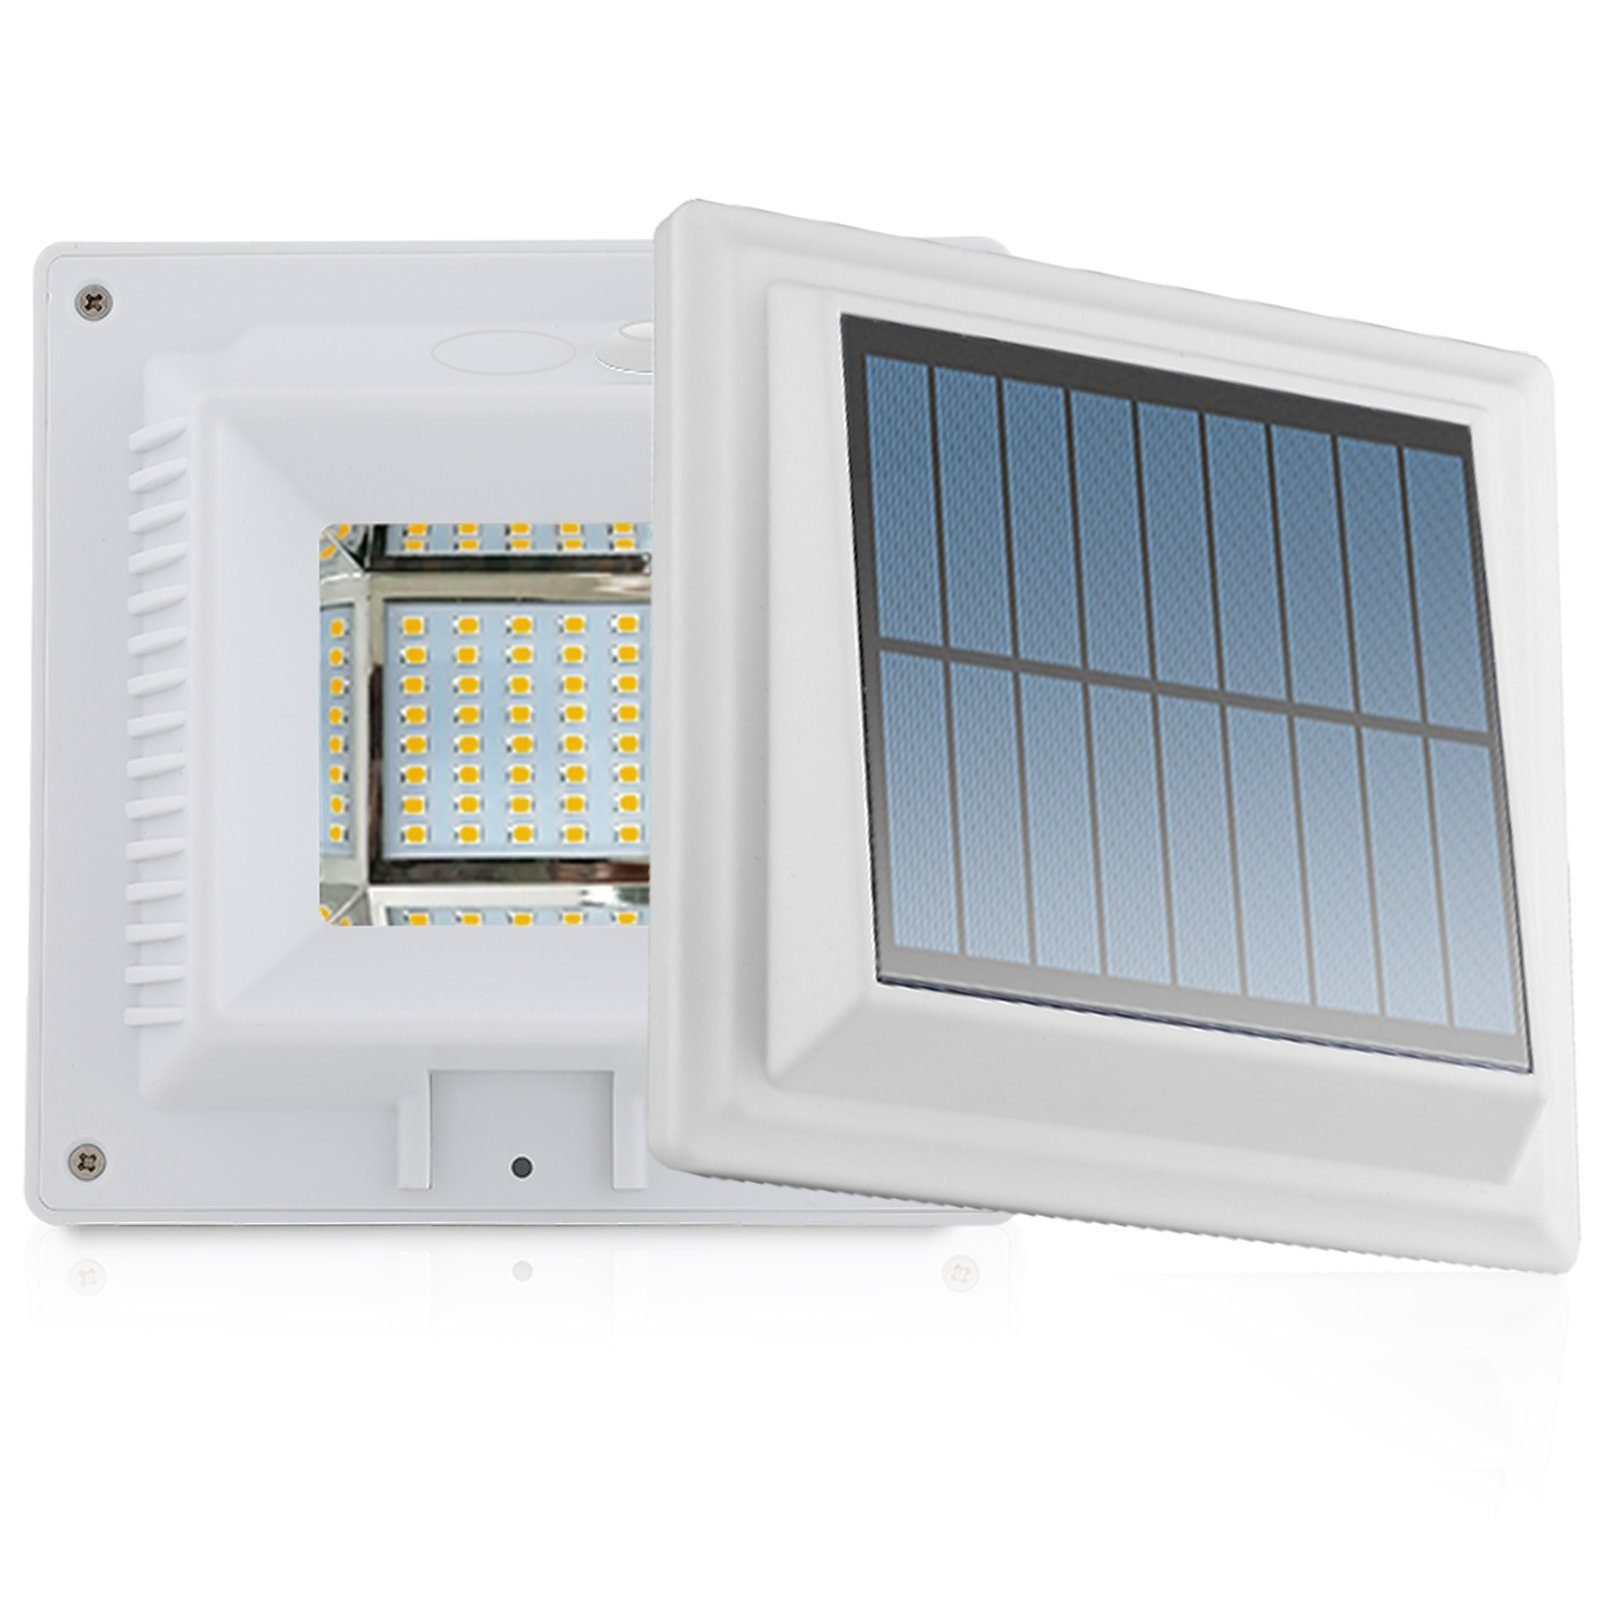 3LEDs Solarlampe Licht für Dachrinnen Außenlampe Leuchte Wandlampe Weiß/Warmweiß 